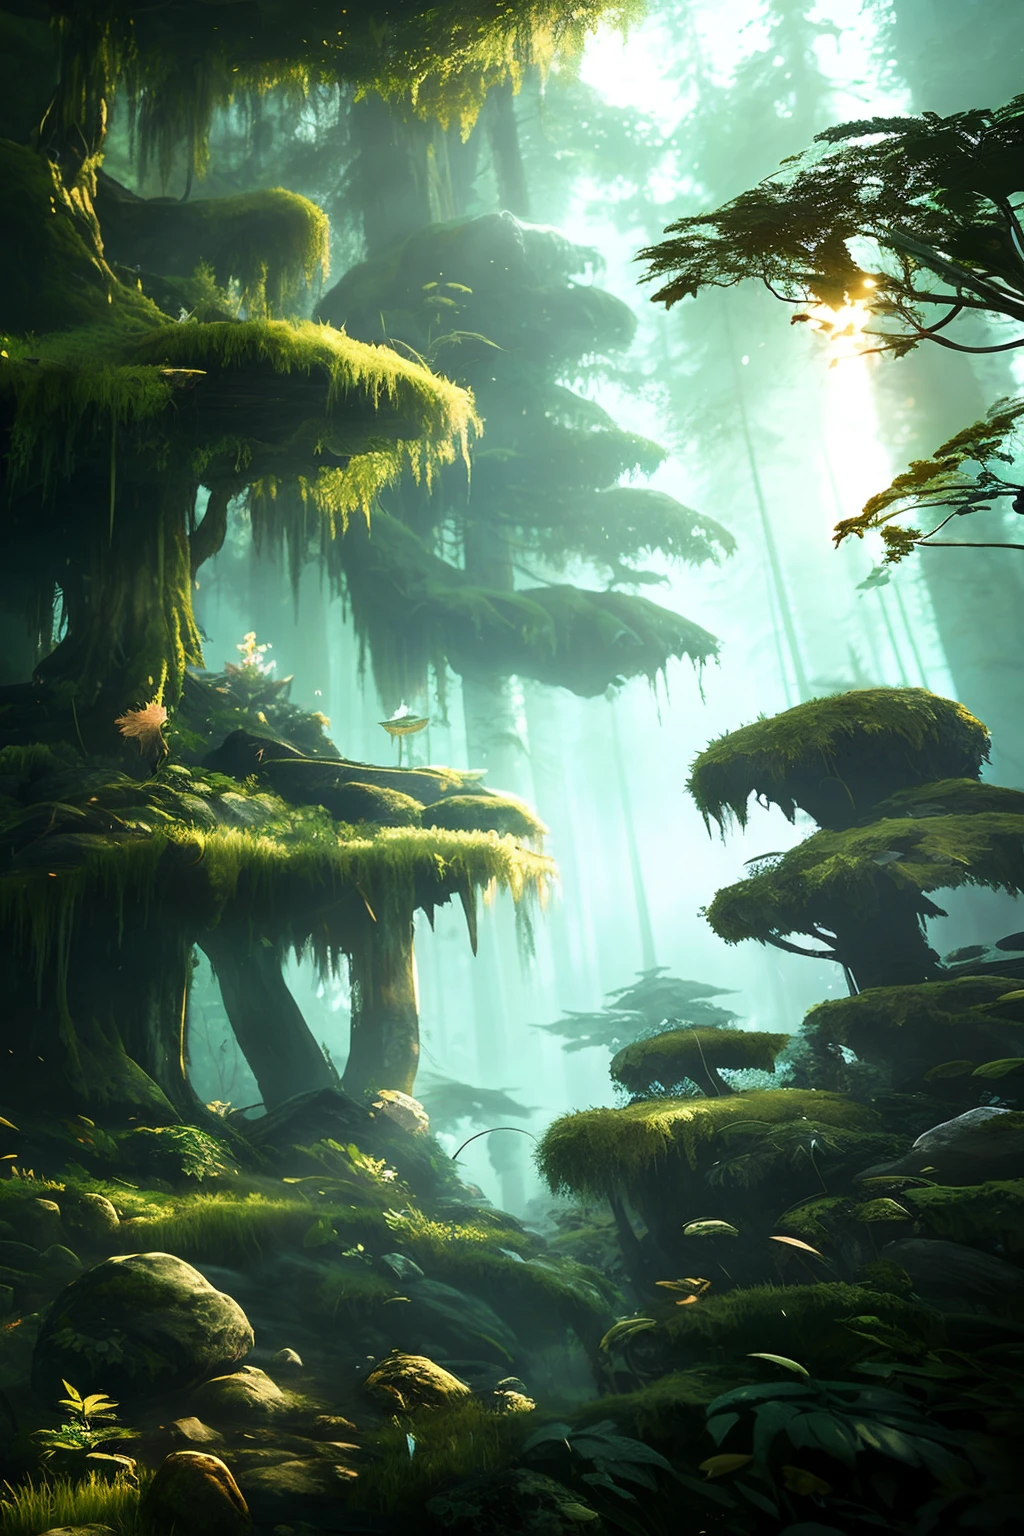 explorador em floresta profunda de crescimento de idosos intrincadamente detalhada iluminação volumétrica natural atmosfera de fantasia